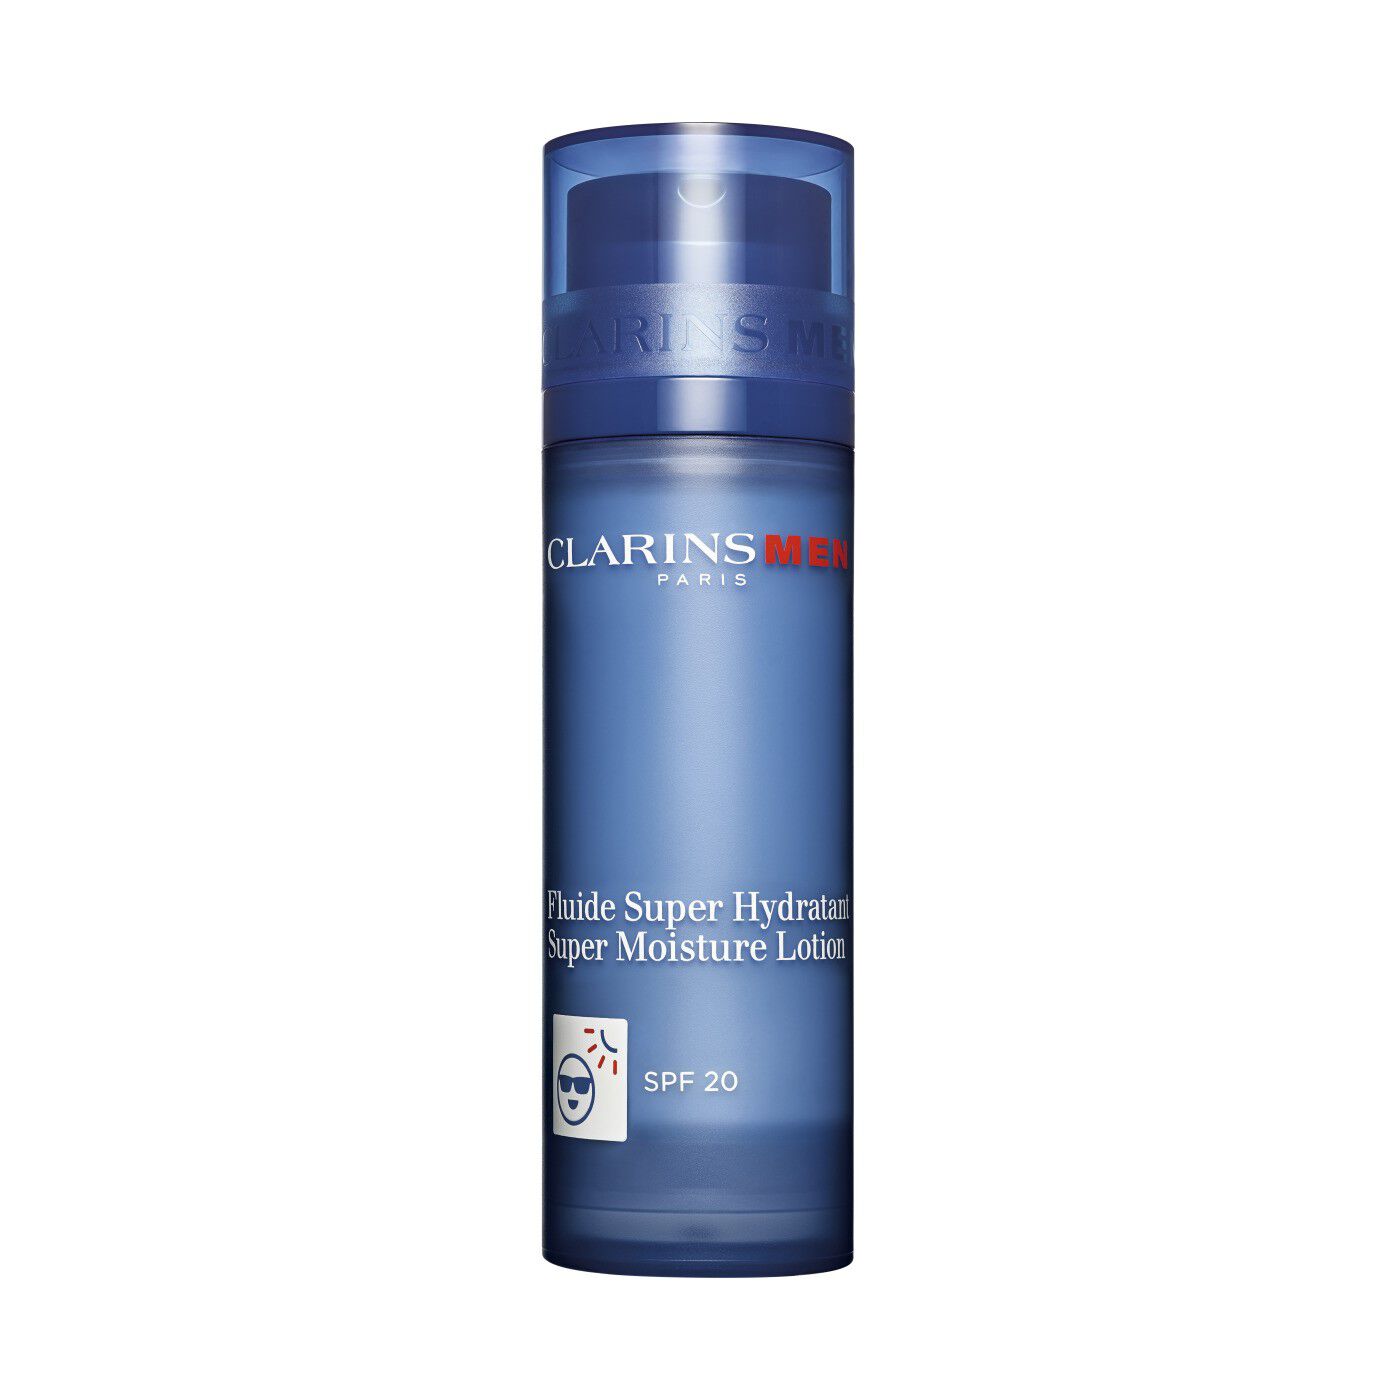 ClarinsMen Feuchtigkeits-Fluide Super Hydratant SPF 20